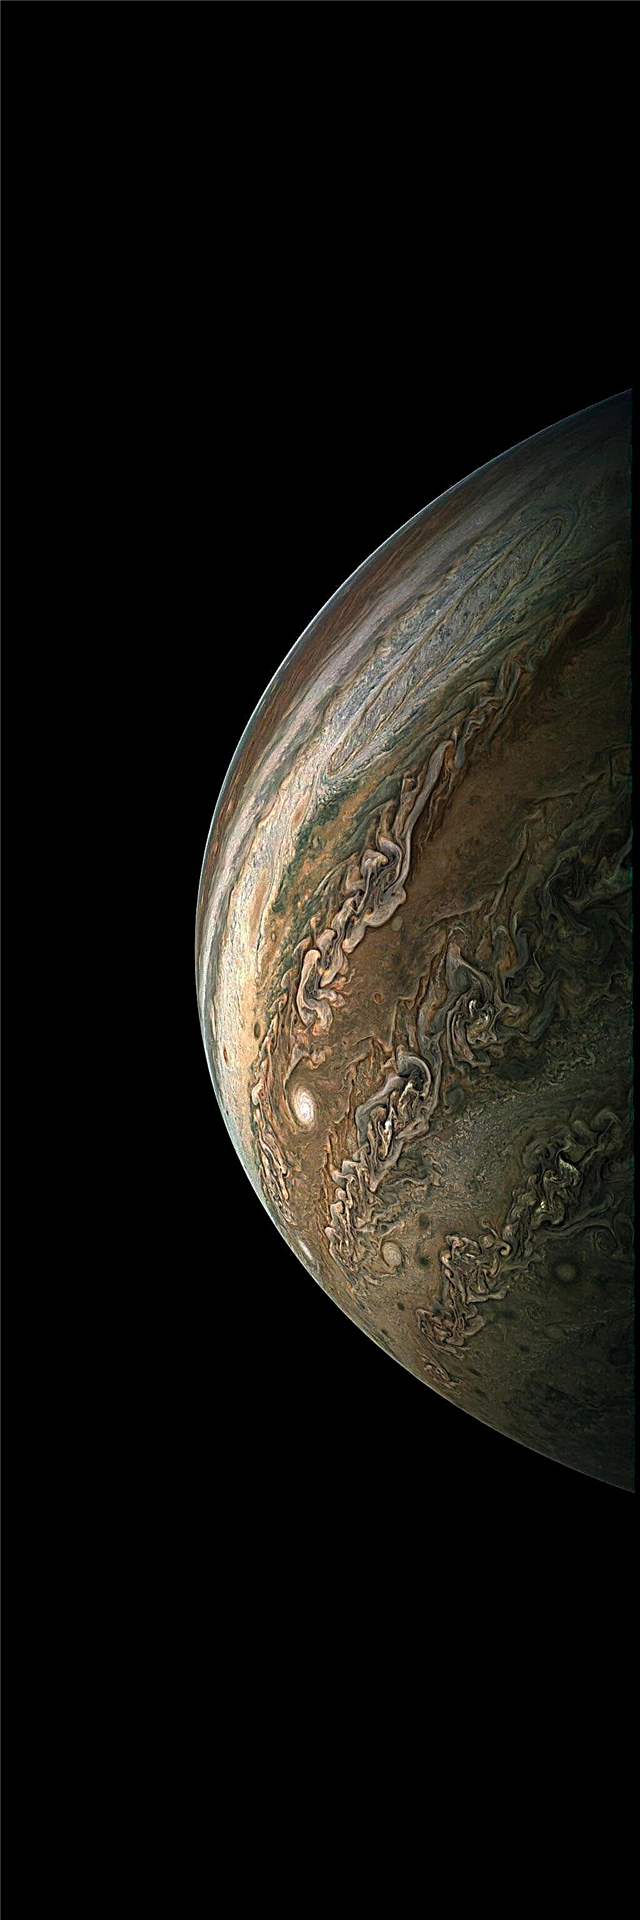 Juno Probe termine le 10e survol scientifique de Jupiter; Les citoyens produisent des images étonnantes